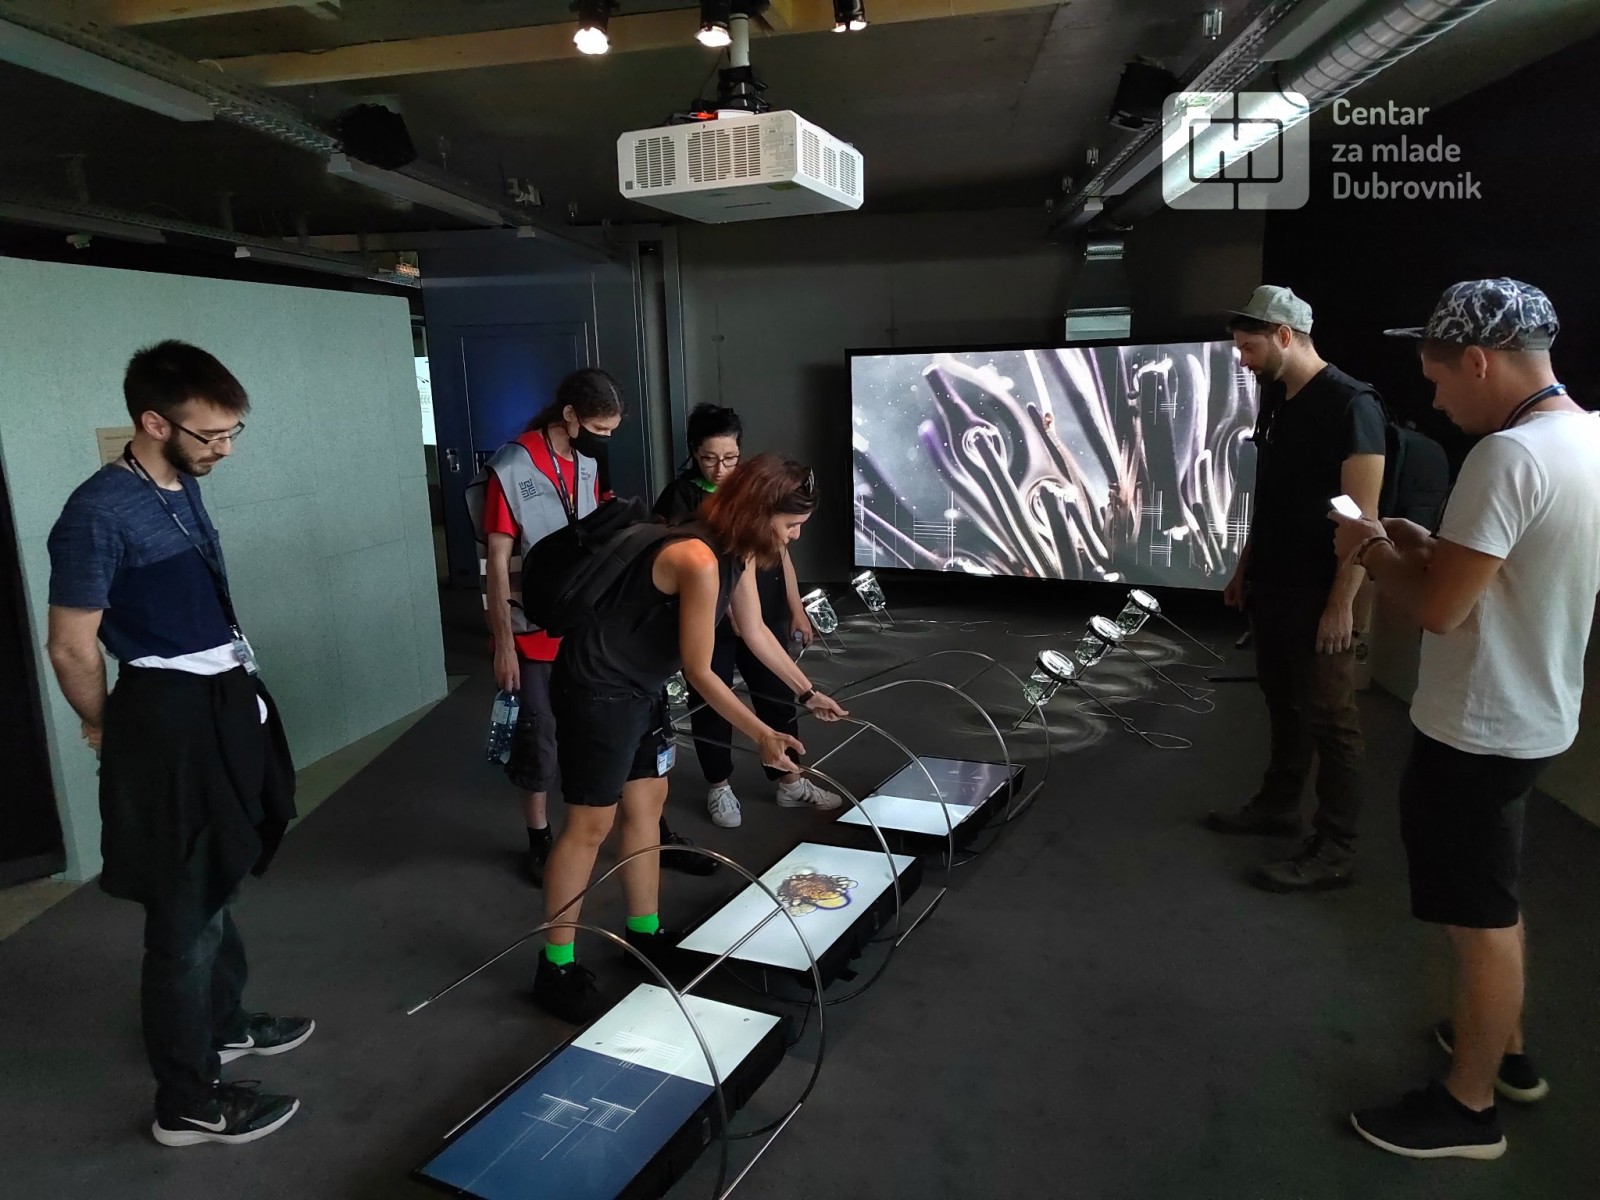 Dubrovačka zajednica tehničke kulture i UR Institut sudjelovali na najvećem svjetskom festivalu novomedijske umjetnosti i tehnologije Ars Electronica u Linzu